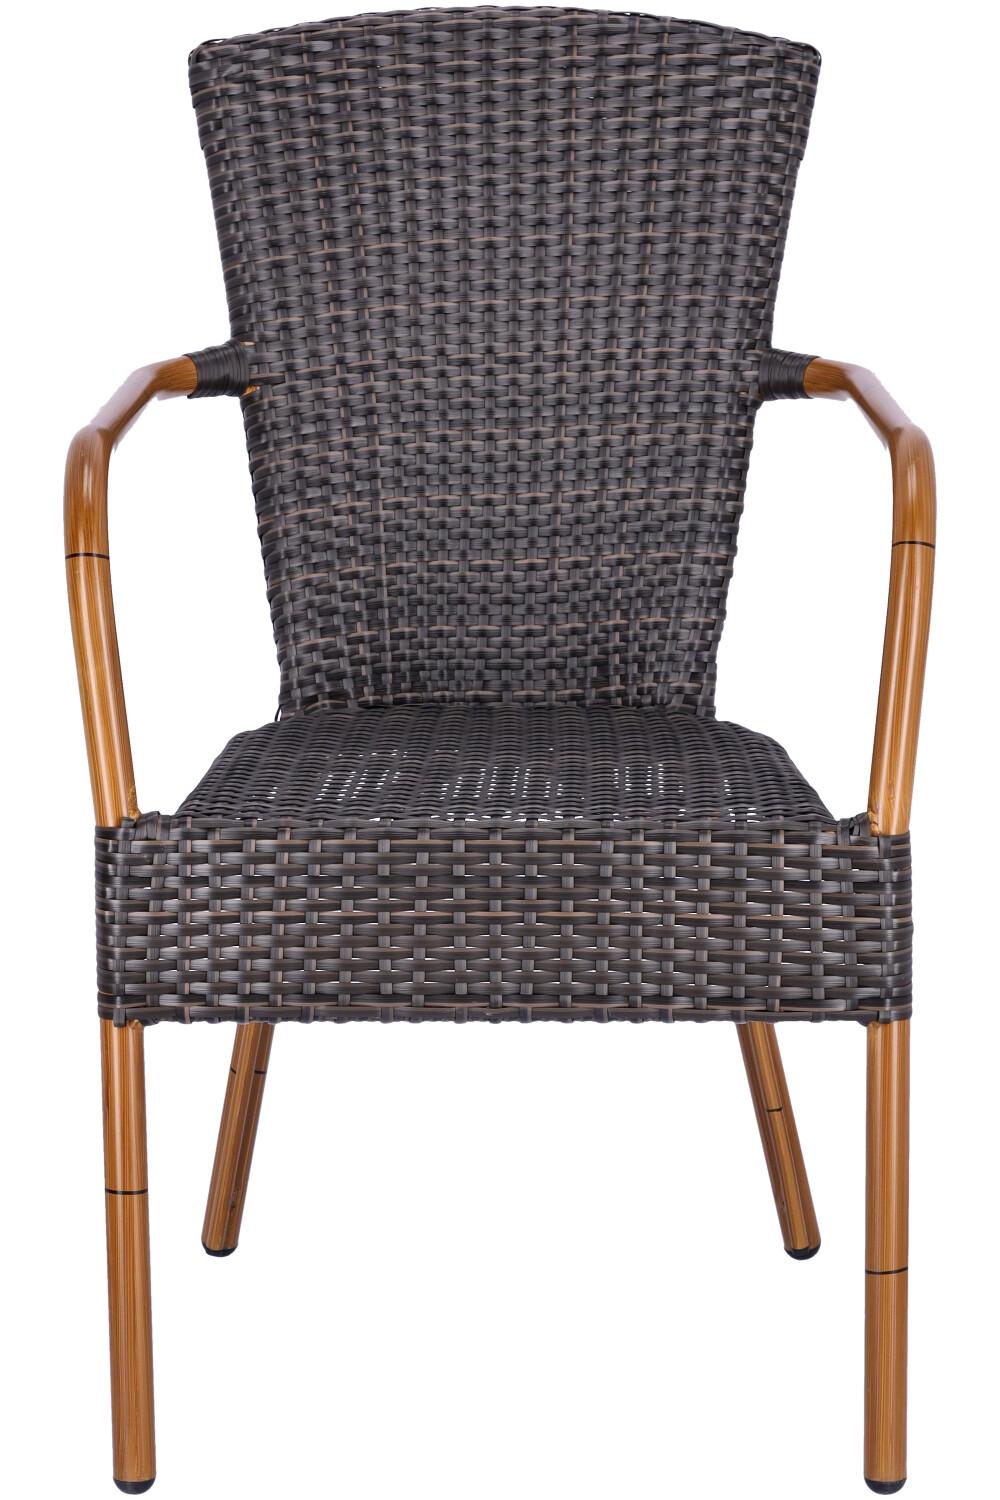 Abbildung arm chair Malena Vorderansicht